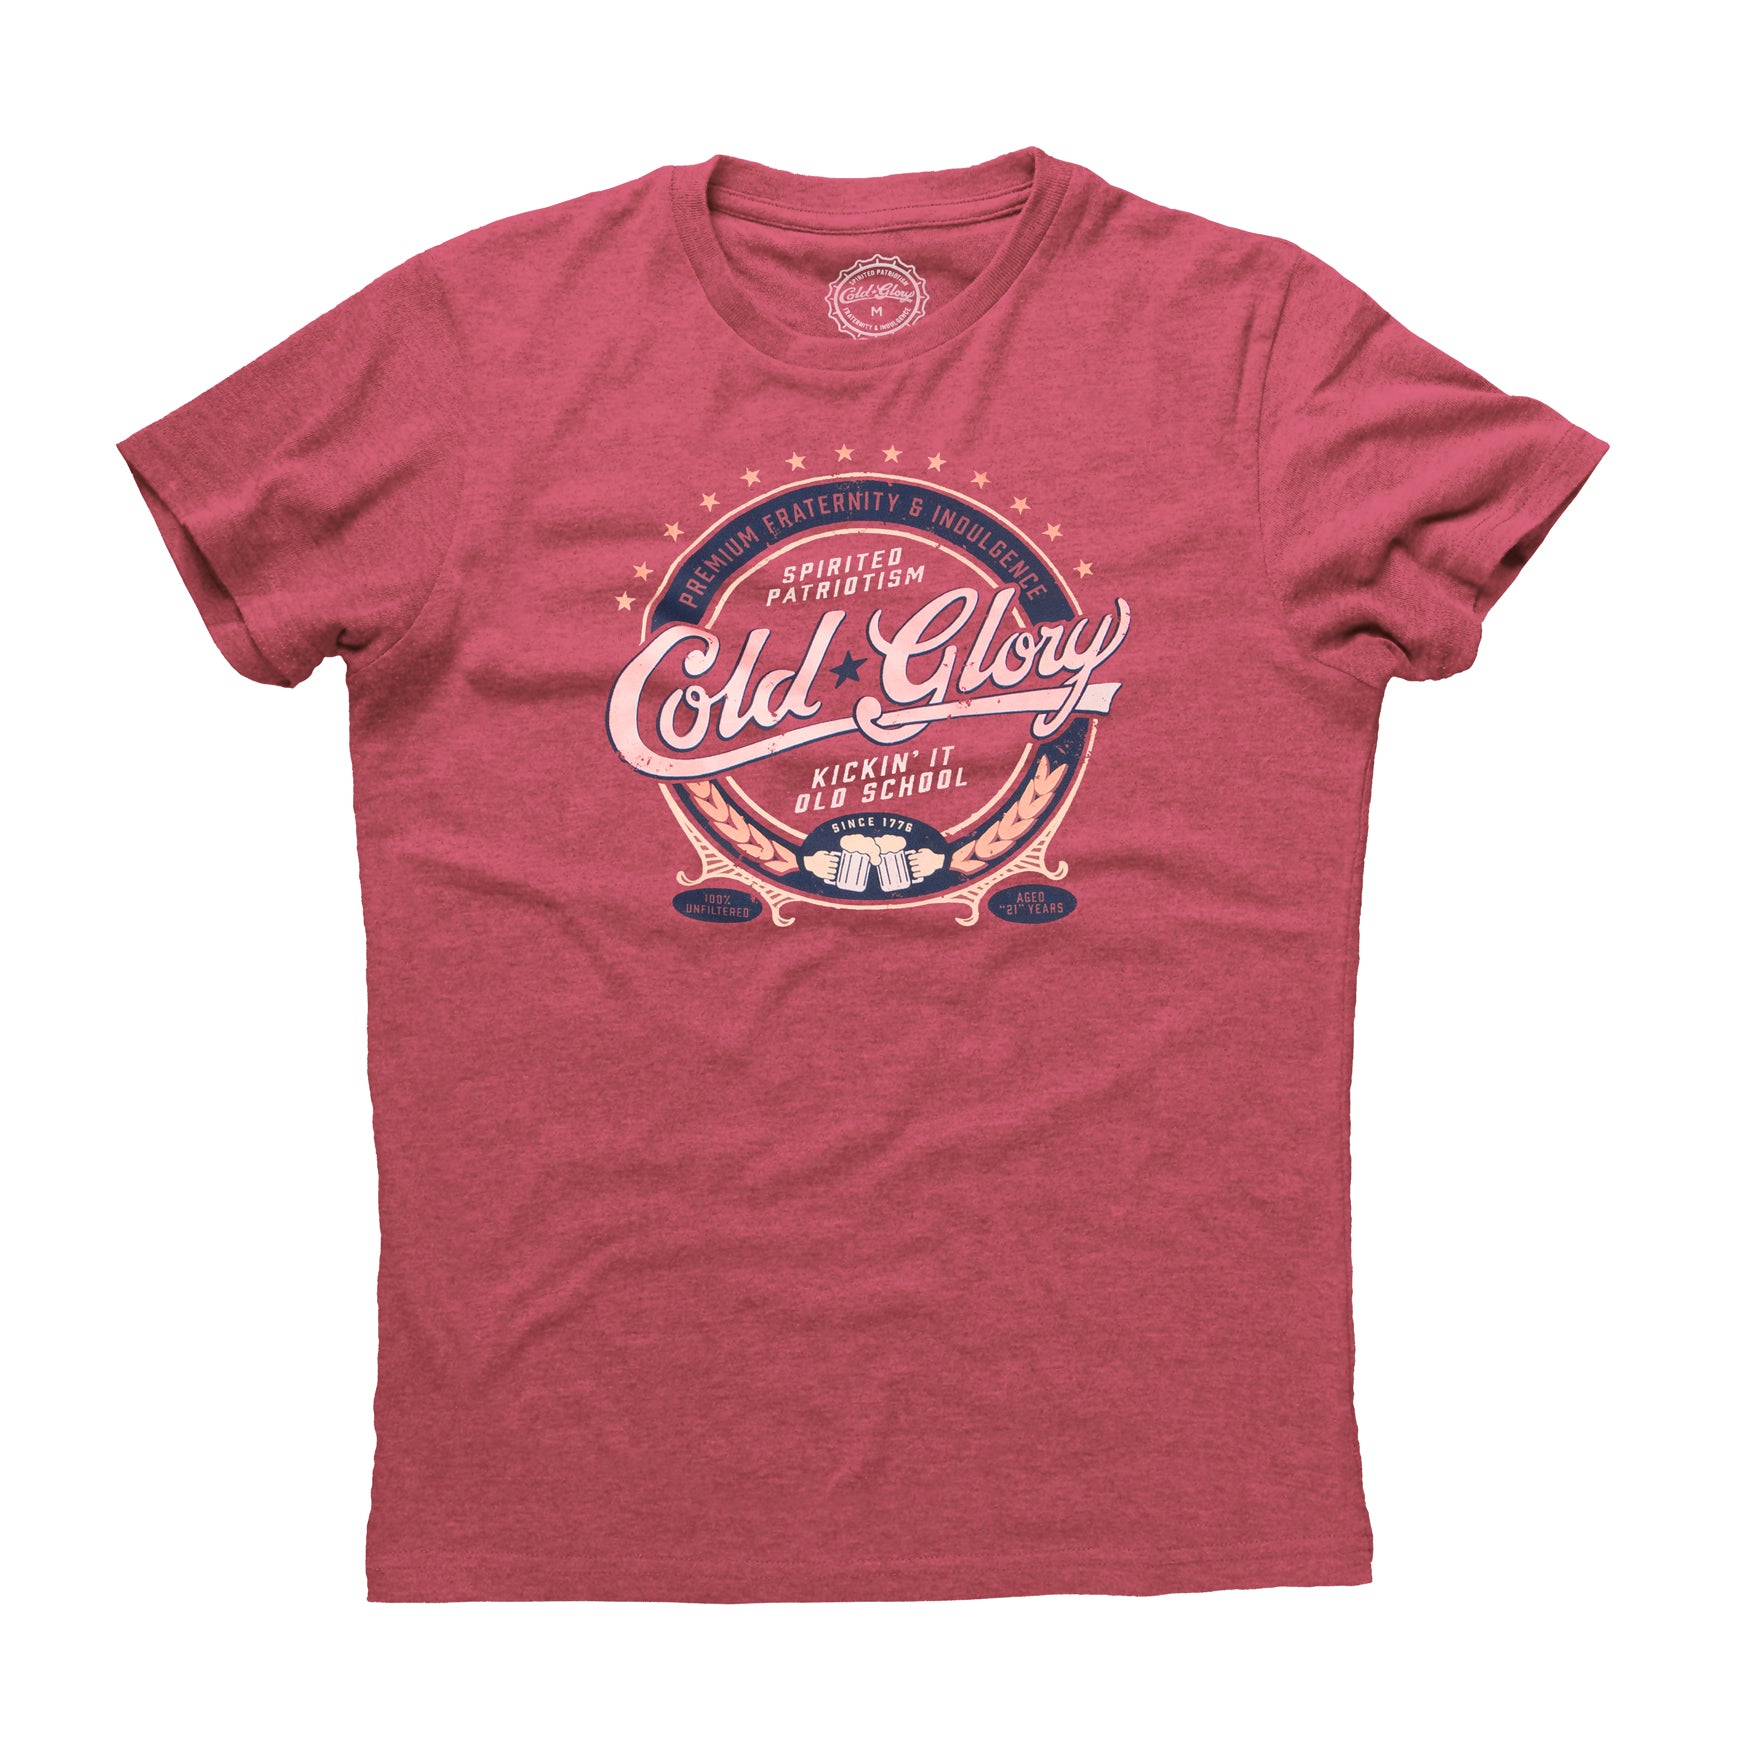 Cold Glory Beer Label T-Shirt Vintage Red | eBay